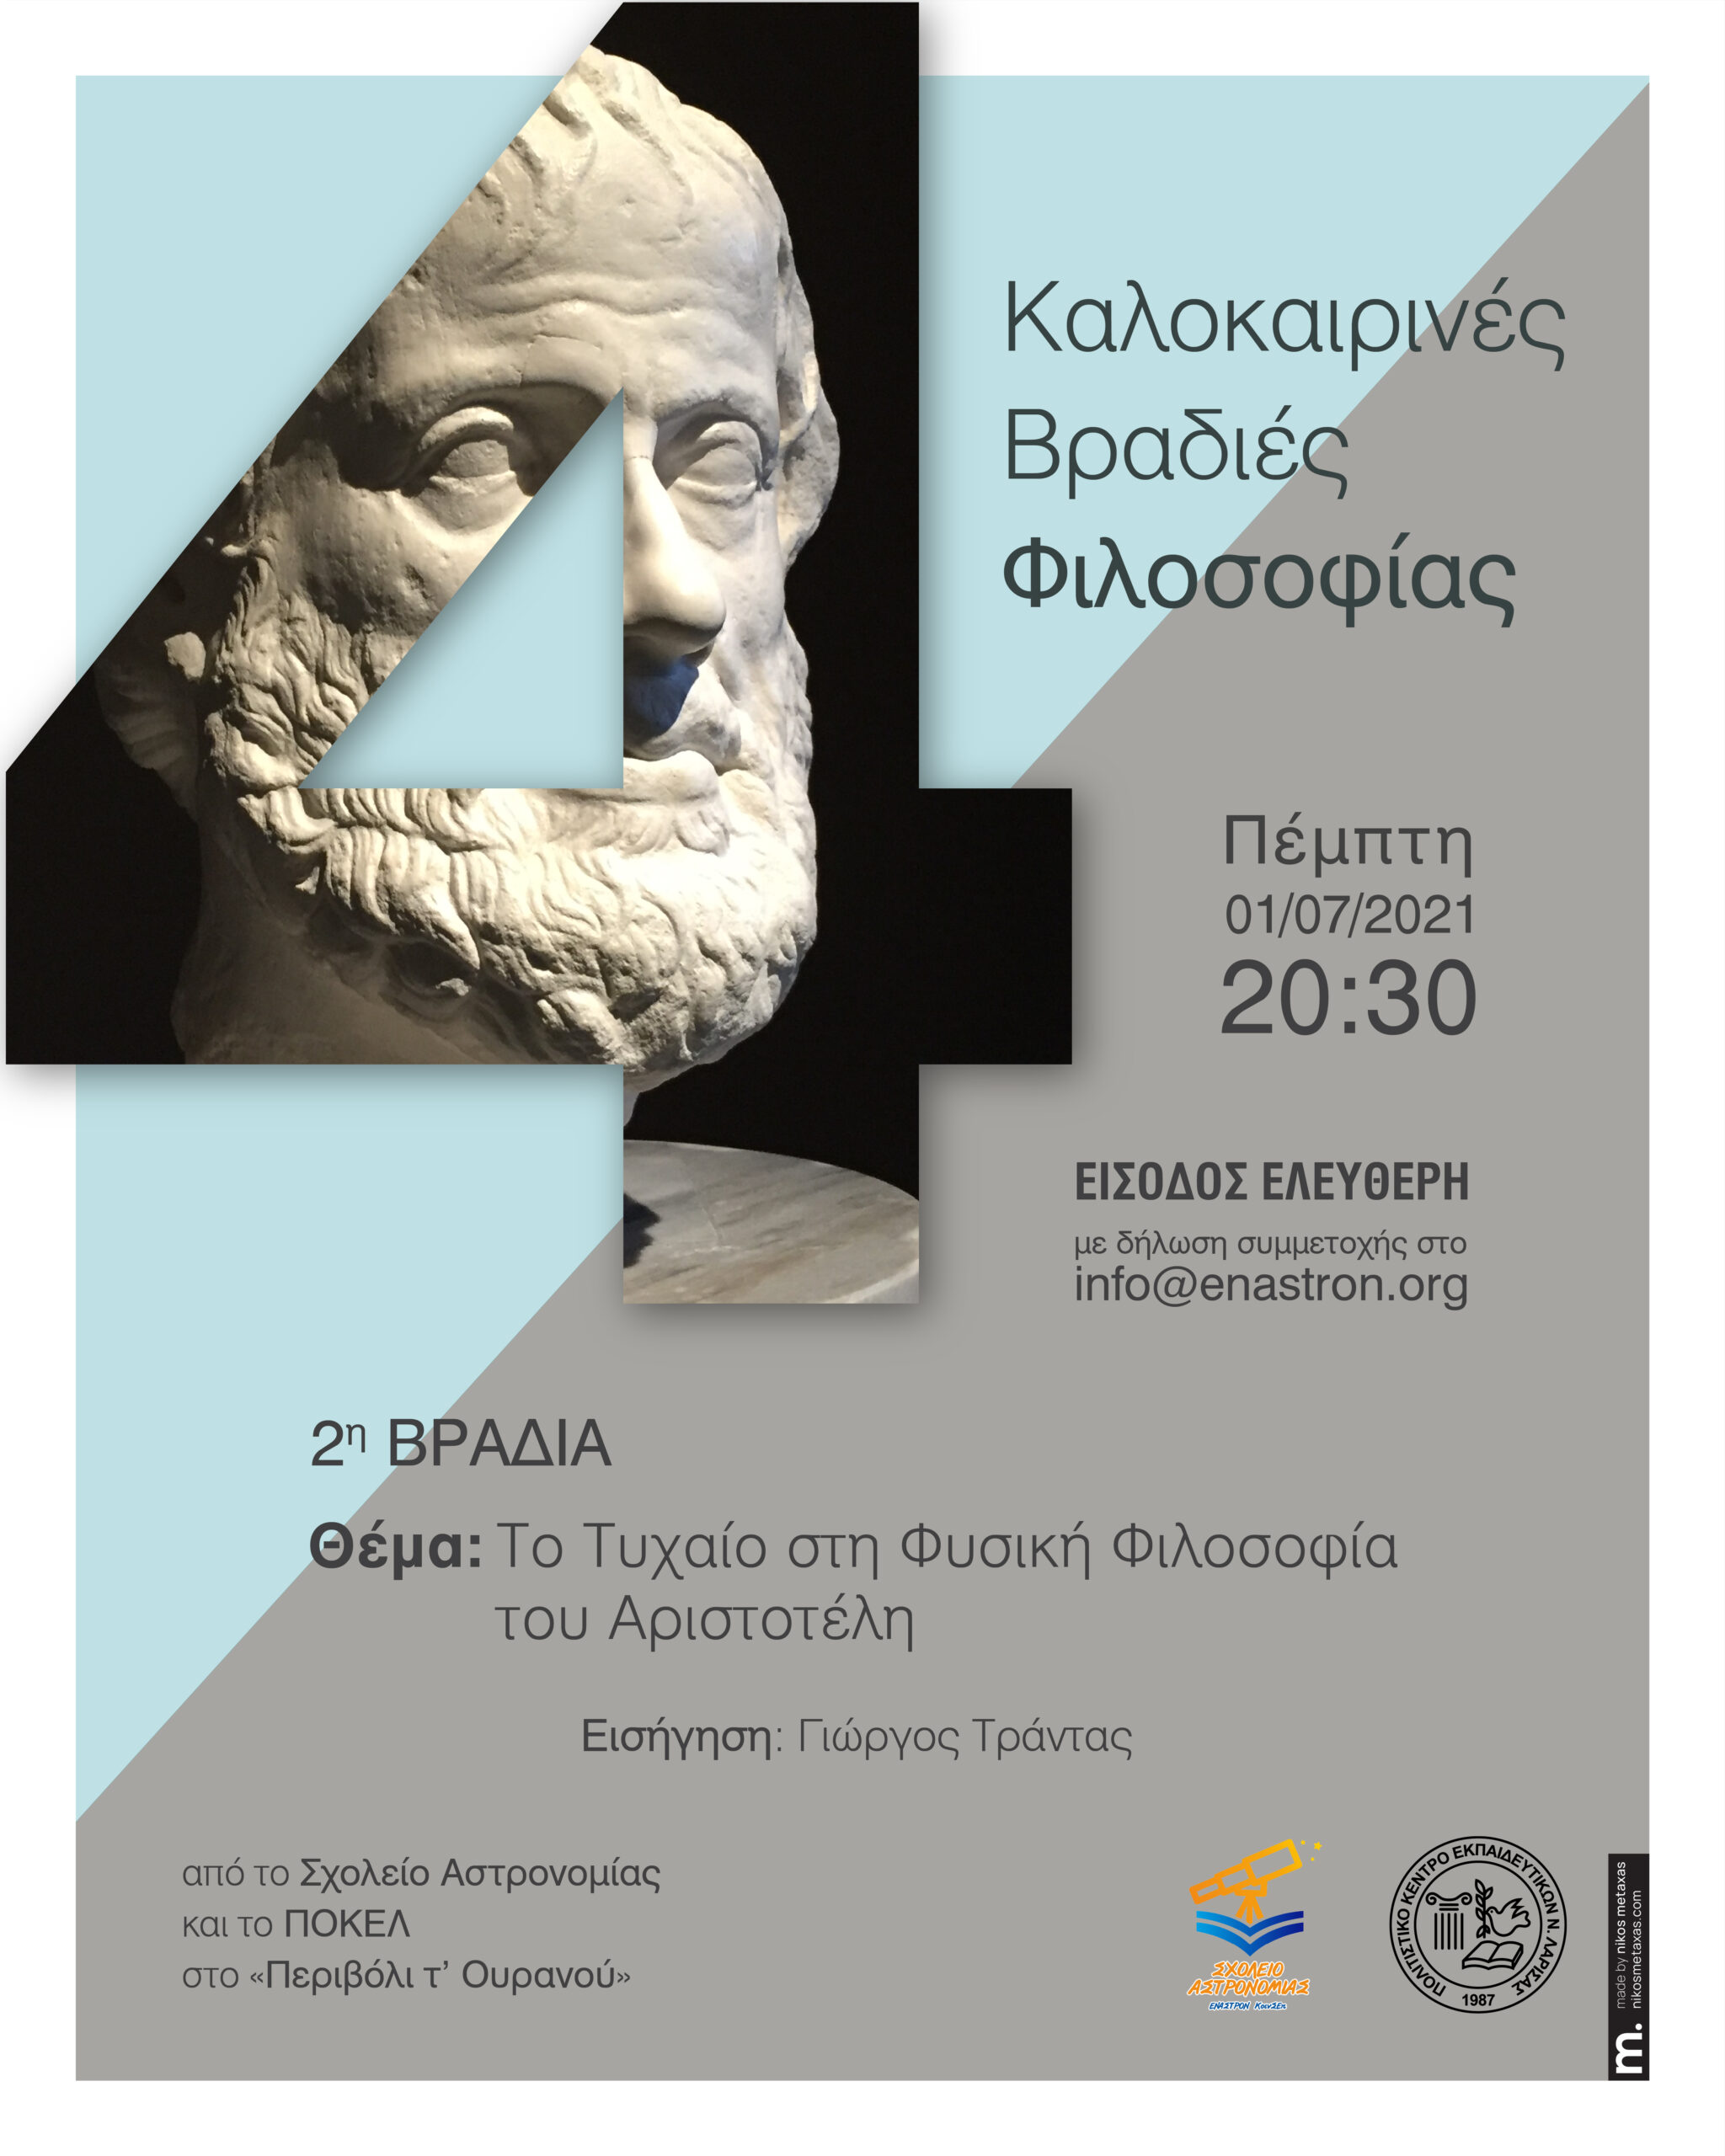 «2η Καλοκαιρινή βραδιά φιλοσοφίας», για τον Αριστοτέλη, από το Σχολείο Αστρονομίας και το ΠΟΚΕΛ, στο «Περιβόλι τ’ Ουρανού» στη Λάρισα